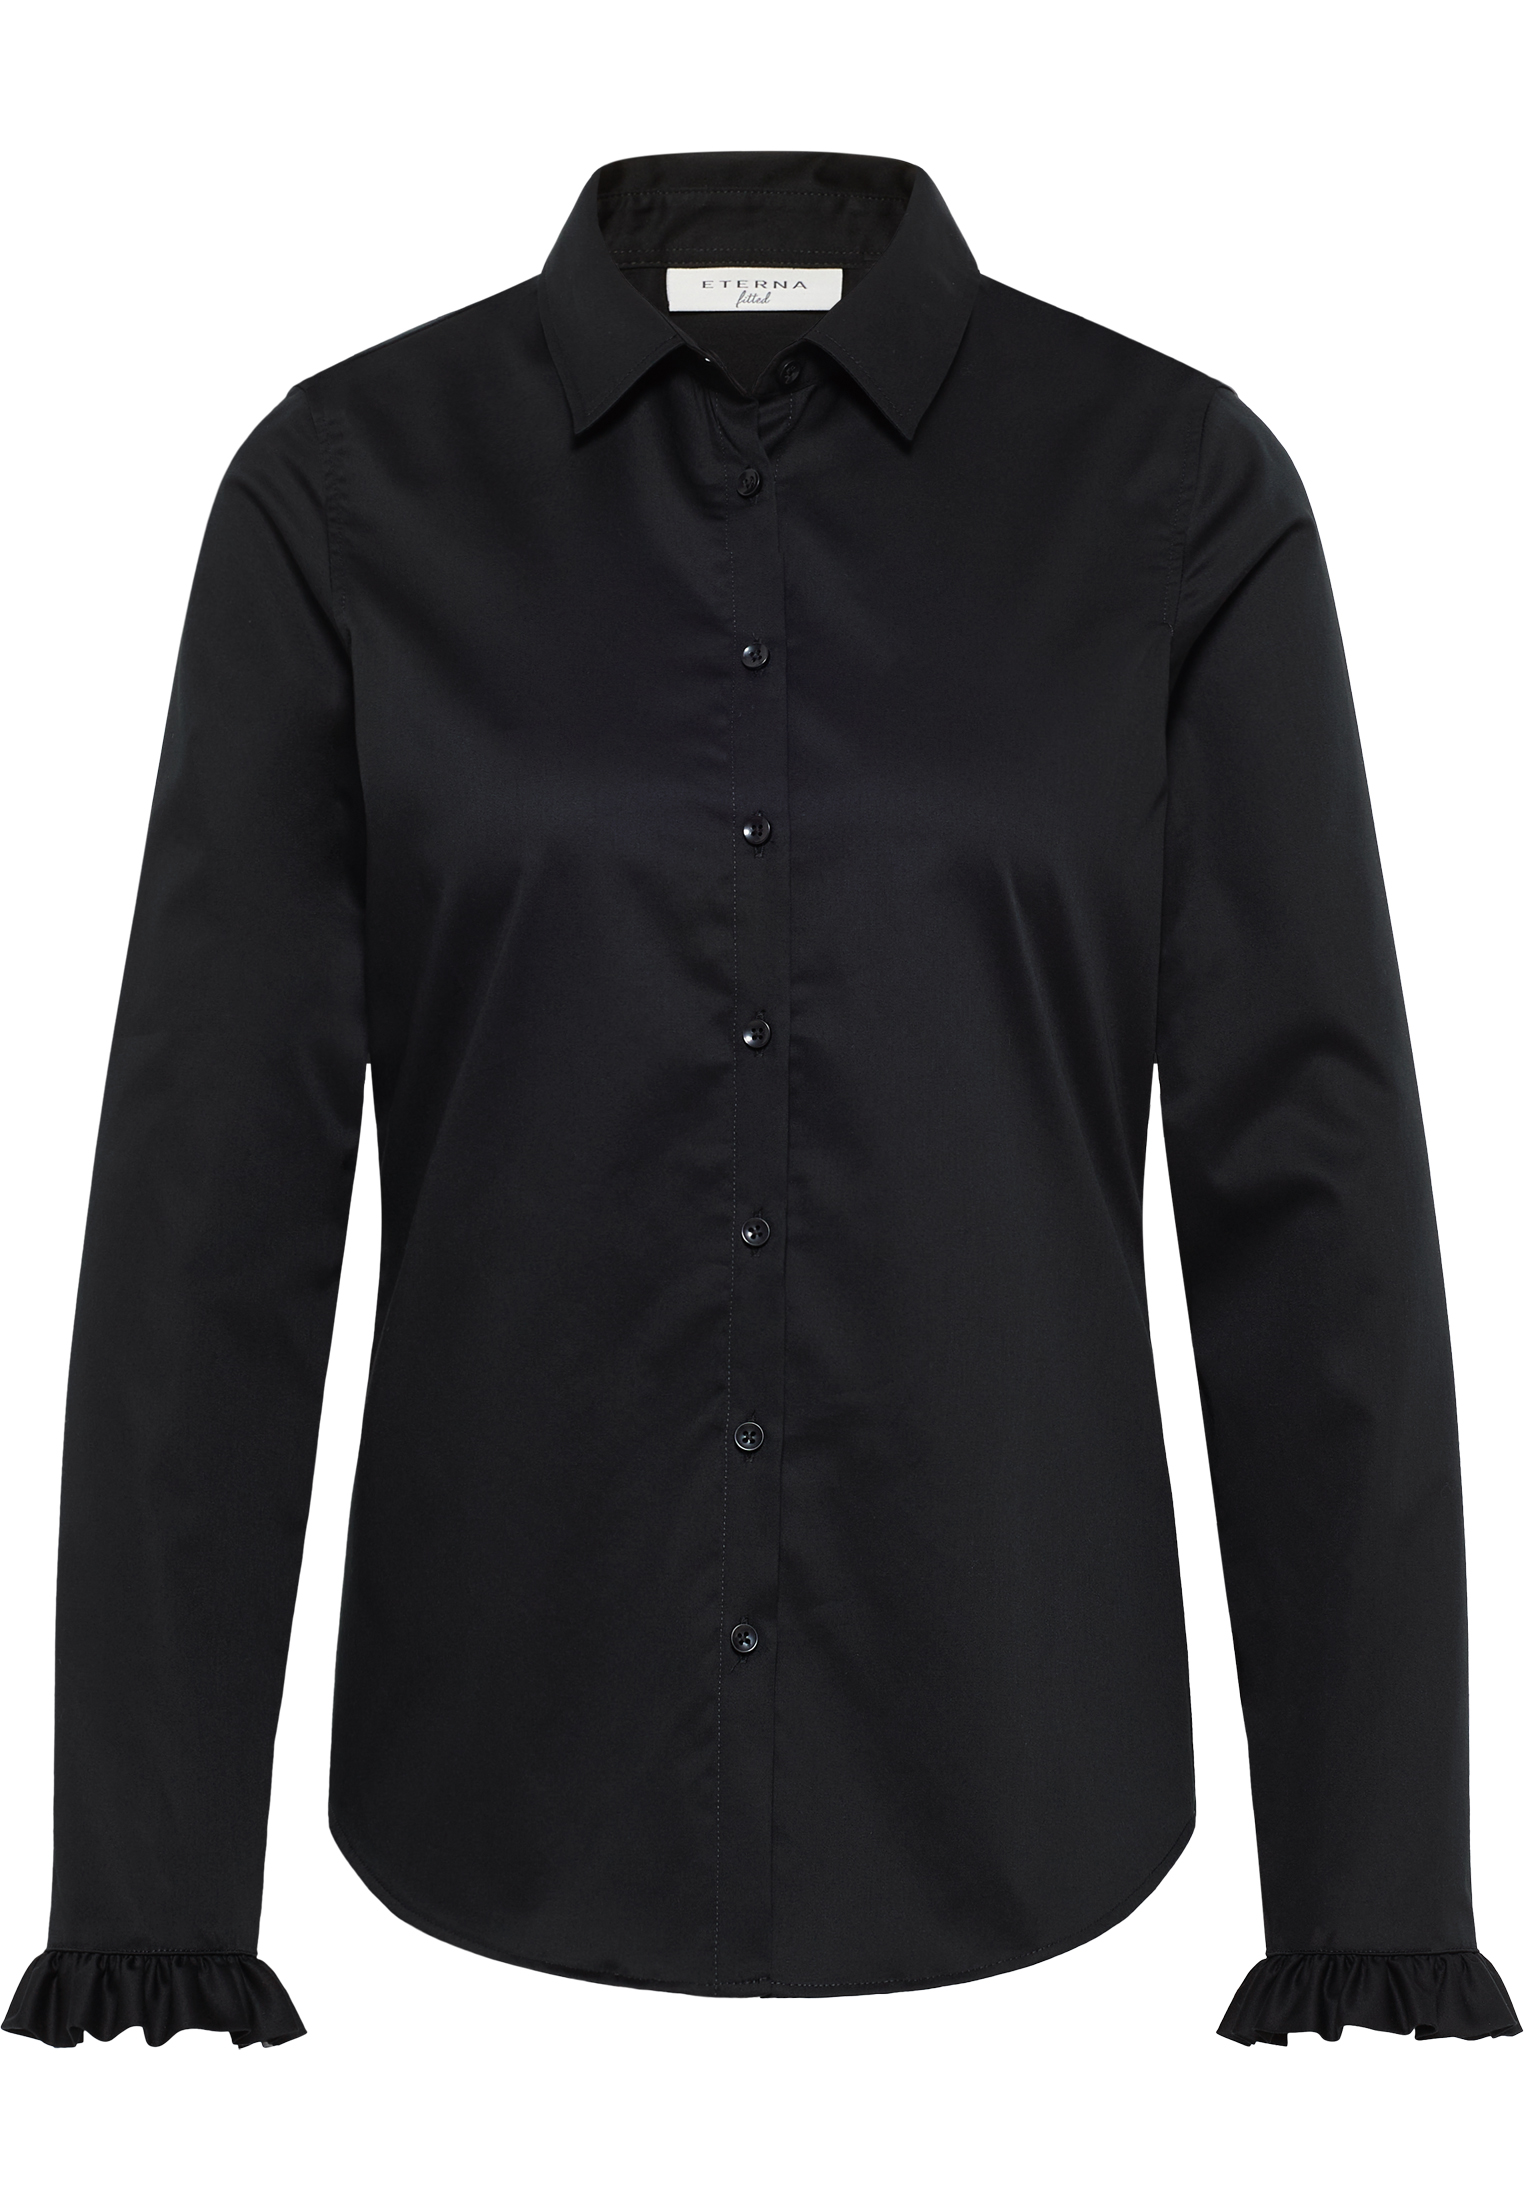 Satin Shirt Bluse | in unifarben 2BL04181-03-91-40-1/1 | schwarz | 40 Langarm | schwarz